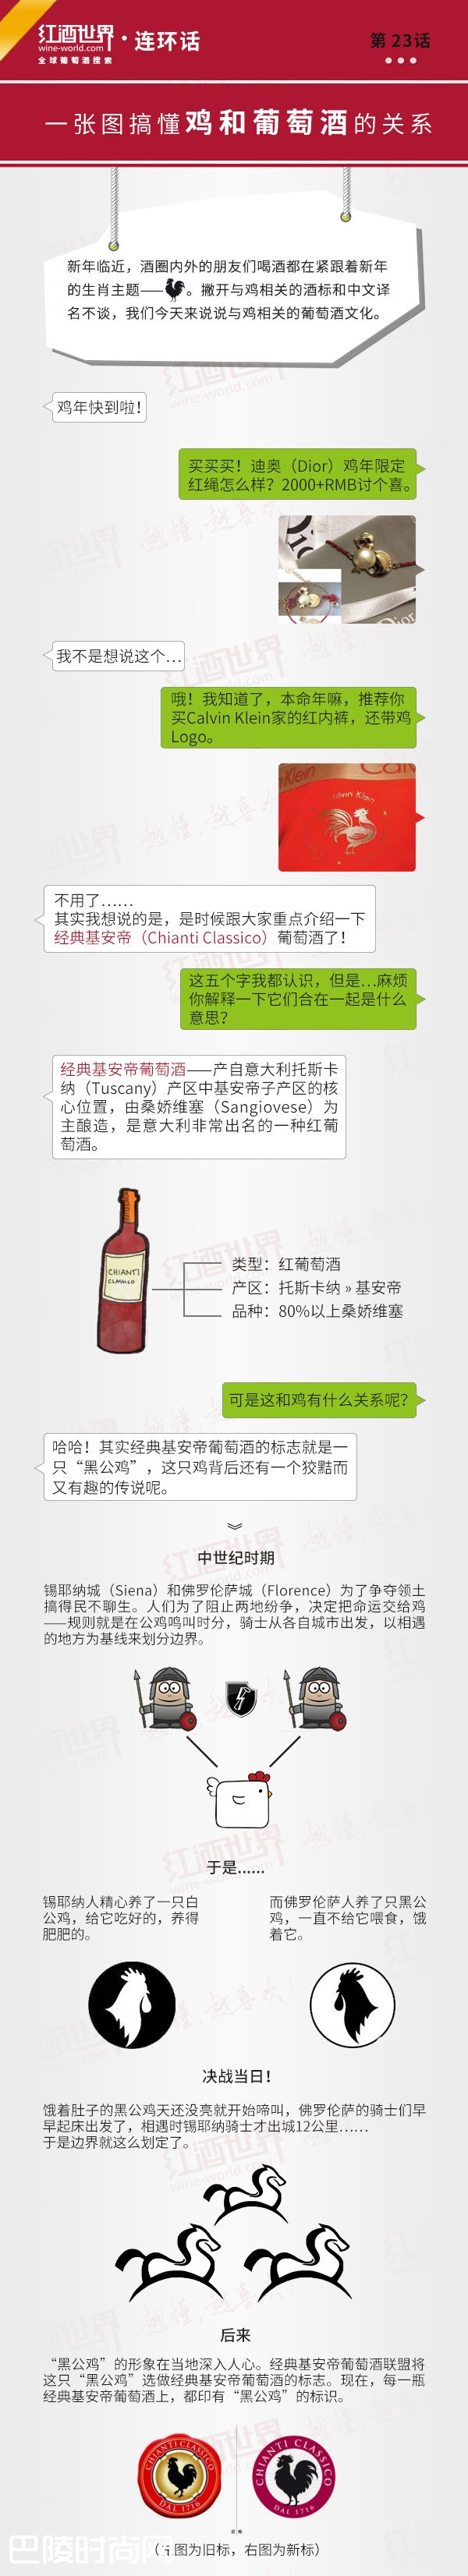 红酒世界连环话：一张图搞懂鸡和葡萄酒的关系